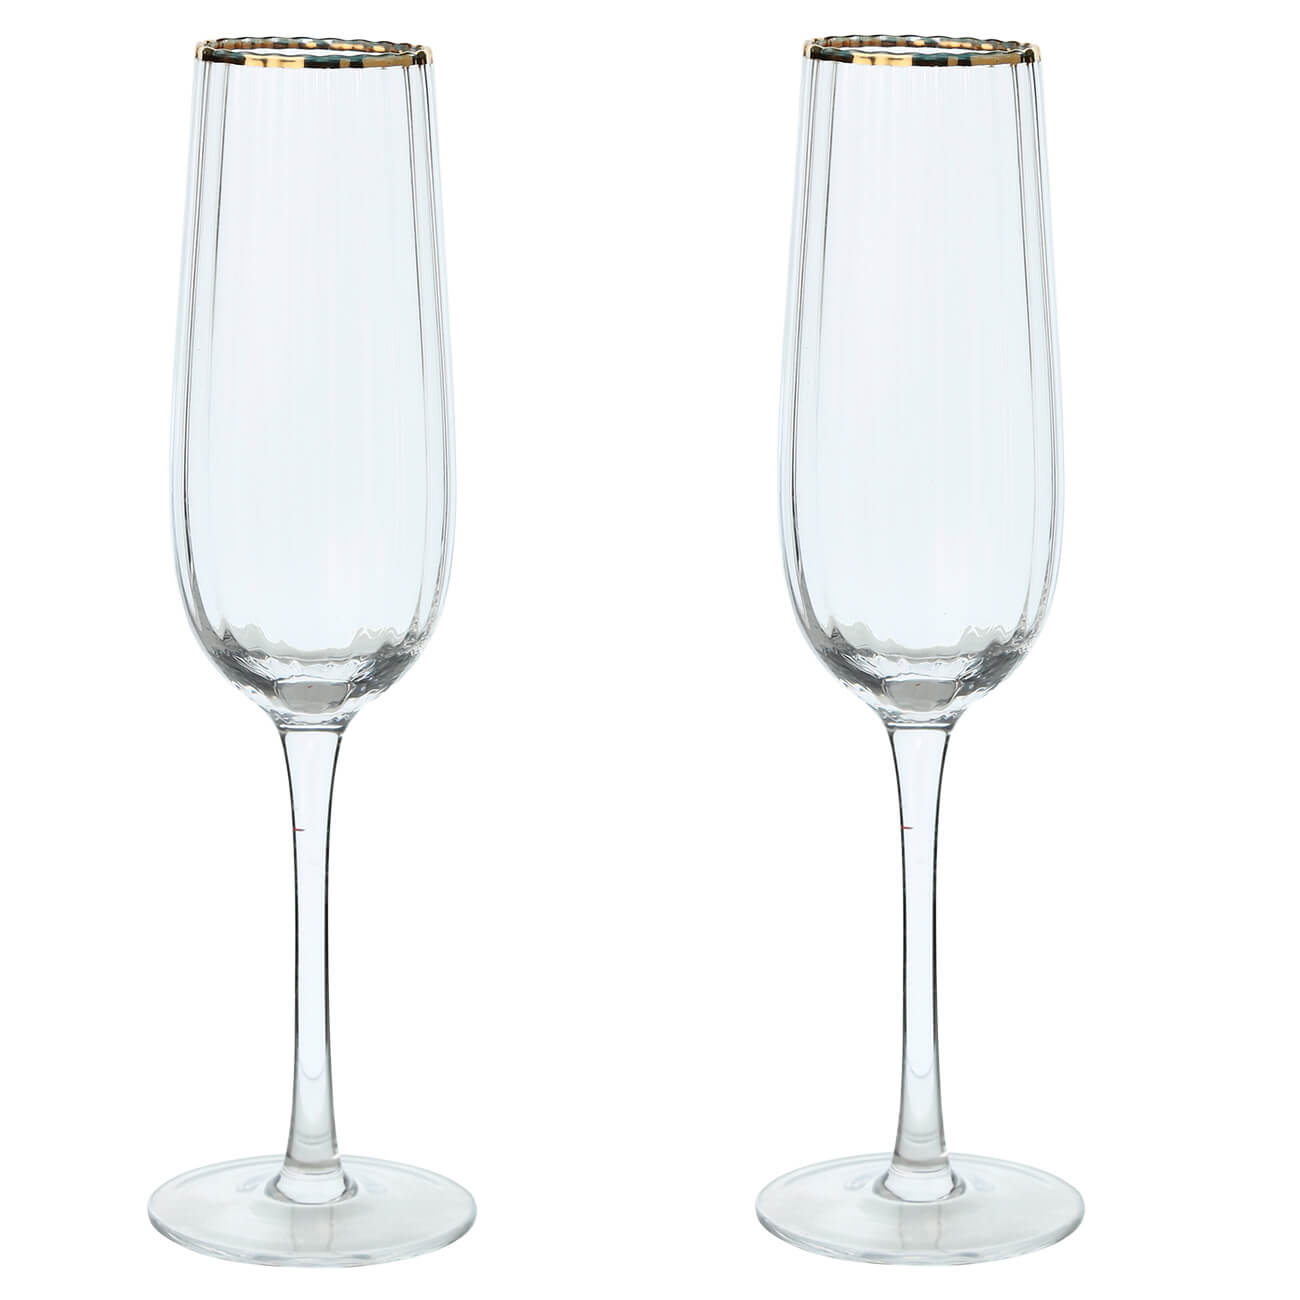 Бокал для шампанского, 275 мл, 2 шт, стекло, с золотистым кантом, Lombardy R Gold изображение № 1